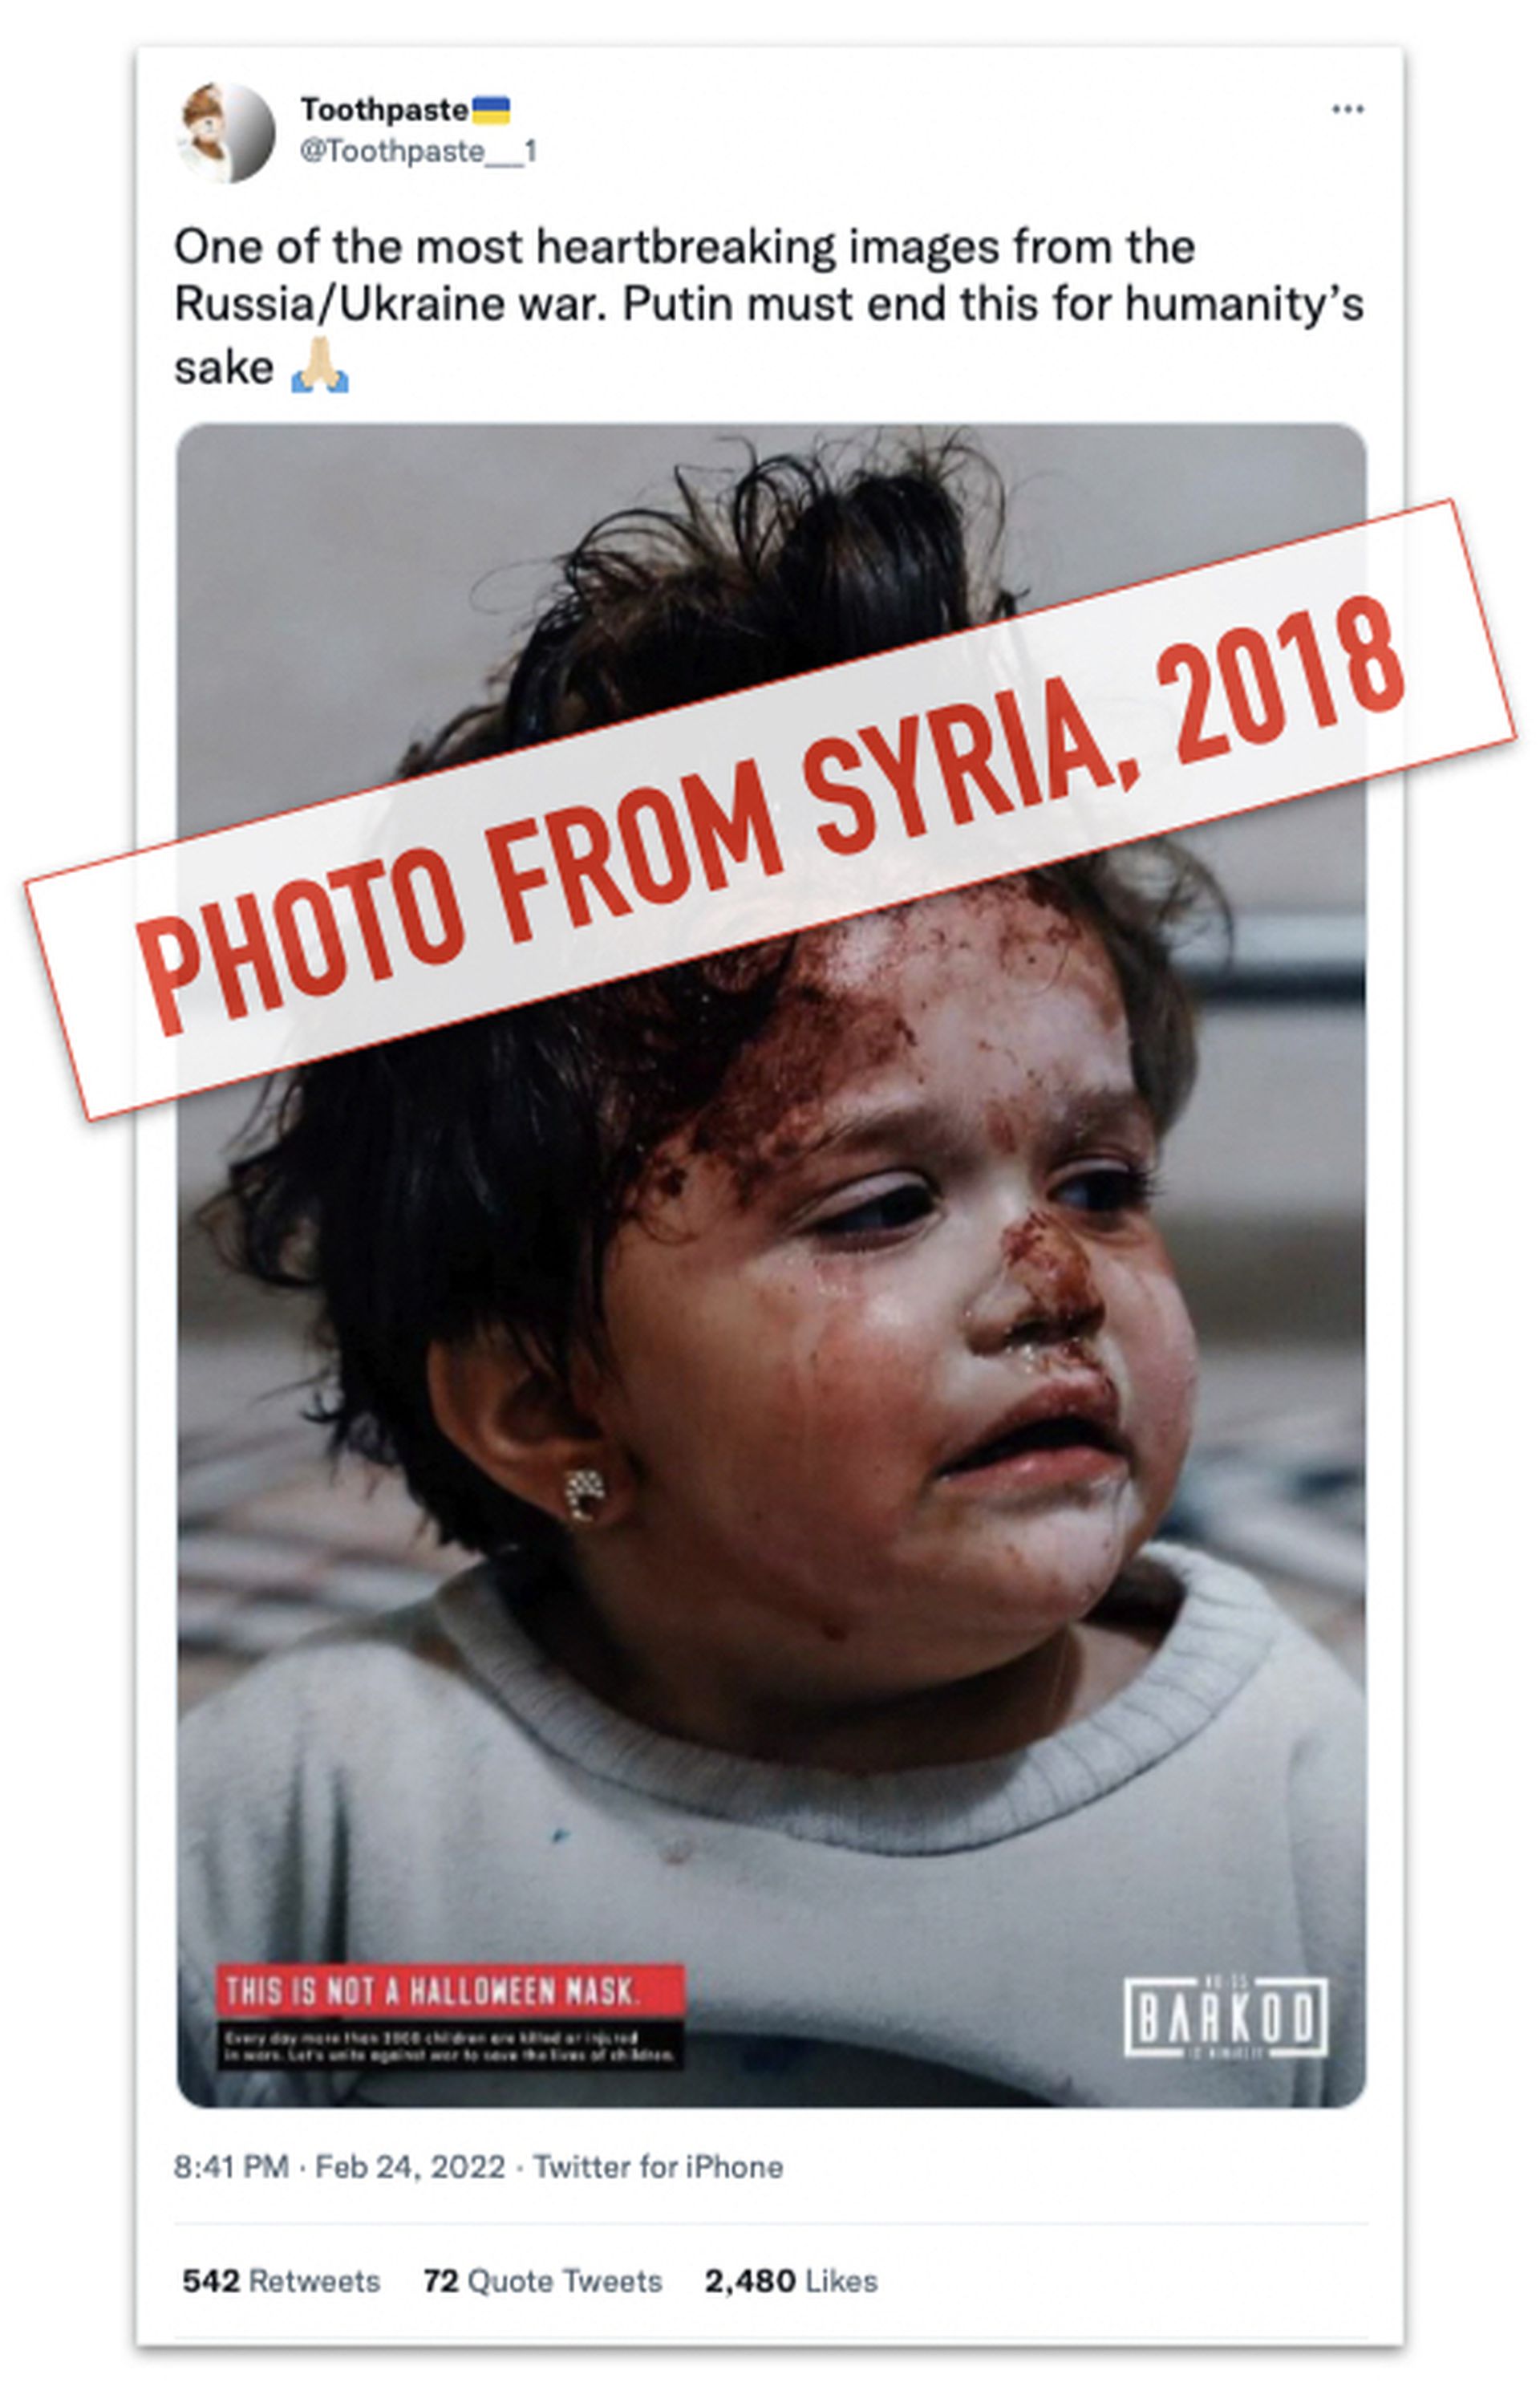 一张来自2018年叙利亚战争女孩受伤的照片，在此次俄乌冲突中被大量转发，其后证实为假资讯。（网络截图）